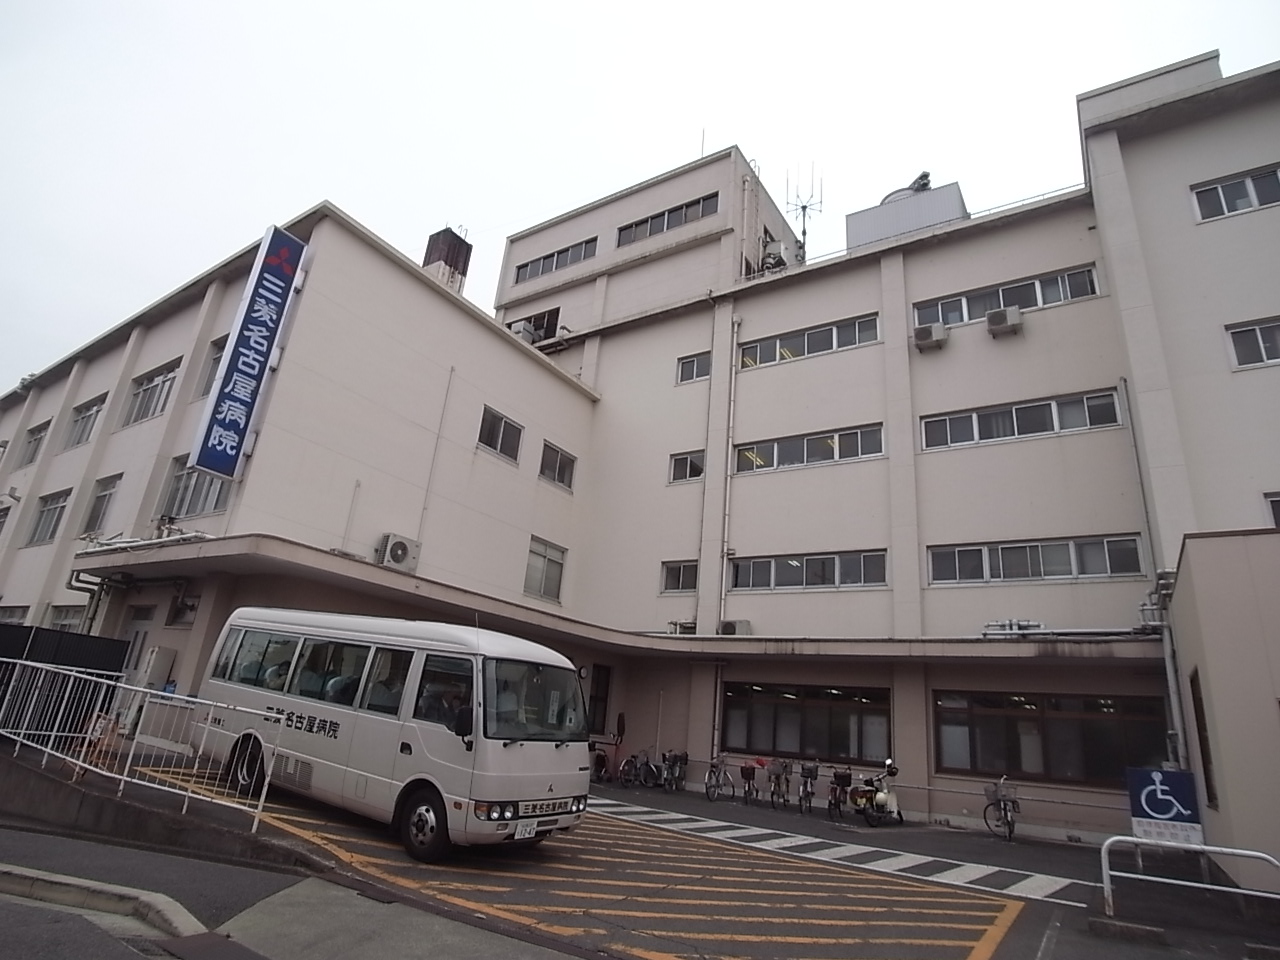 Hospital. 1300m to Mitsubishi Nagoya hospital (hospital)